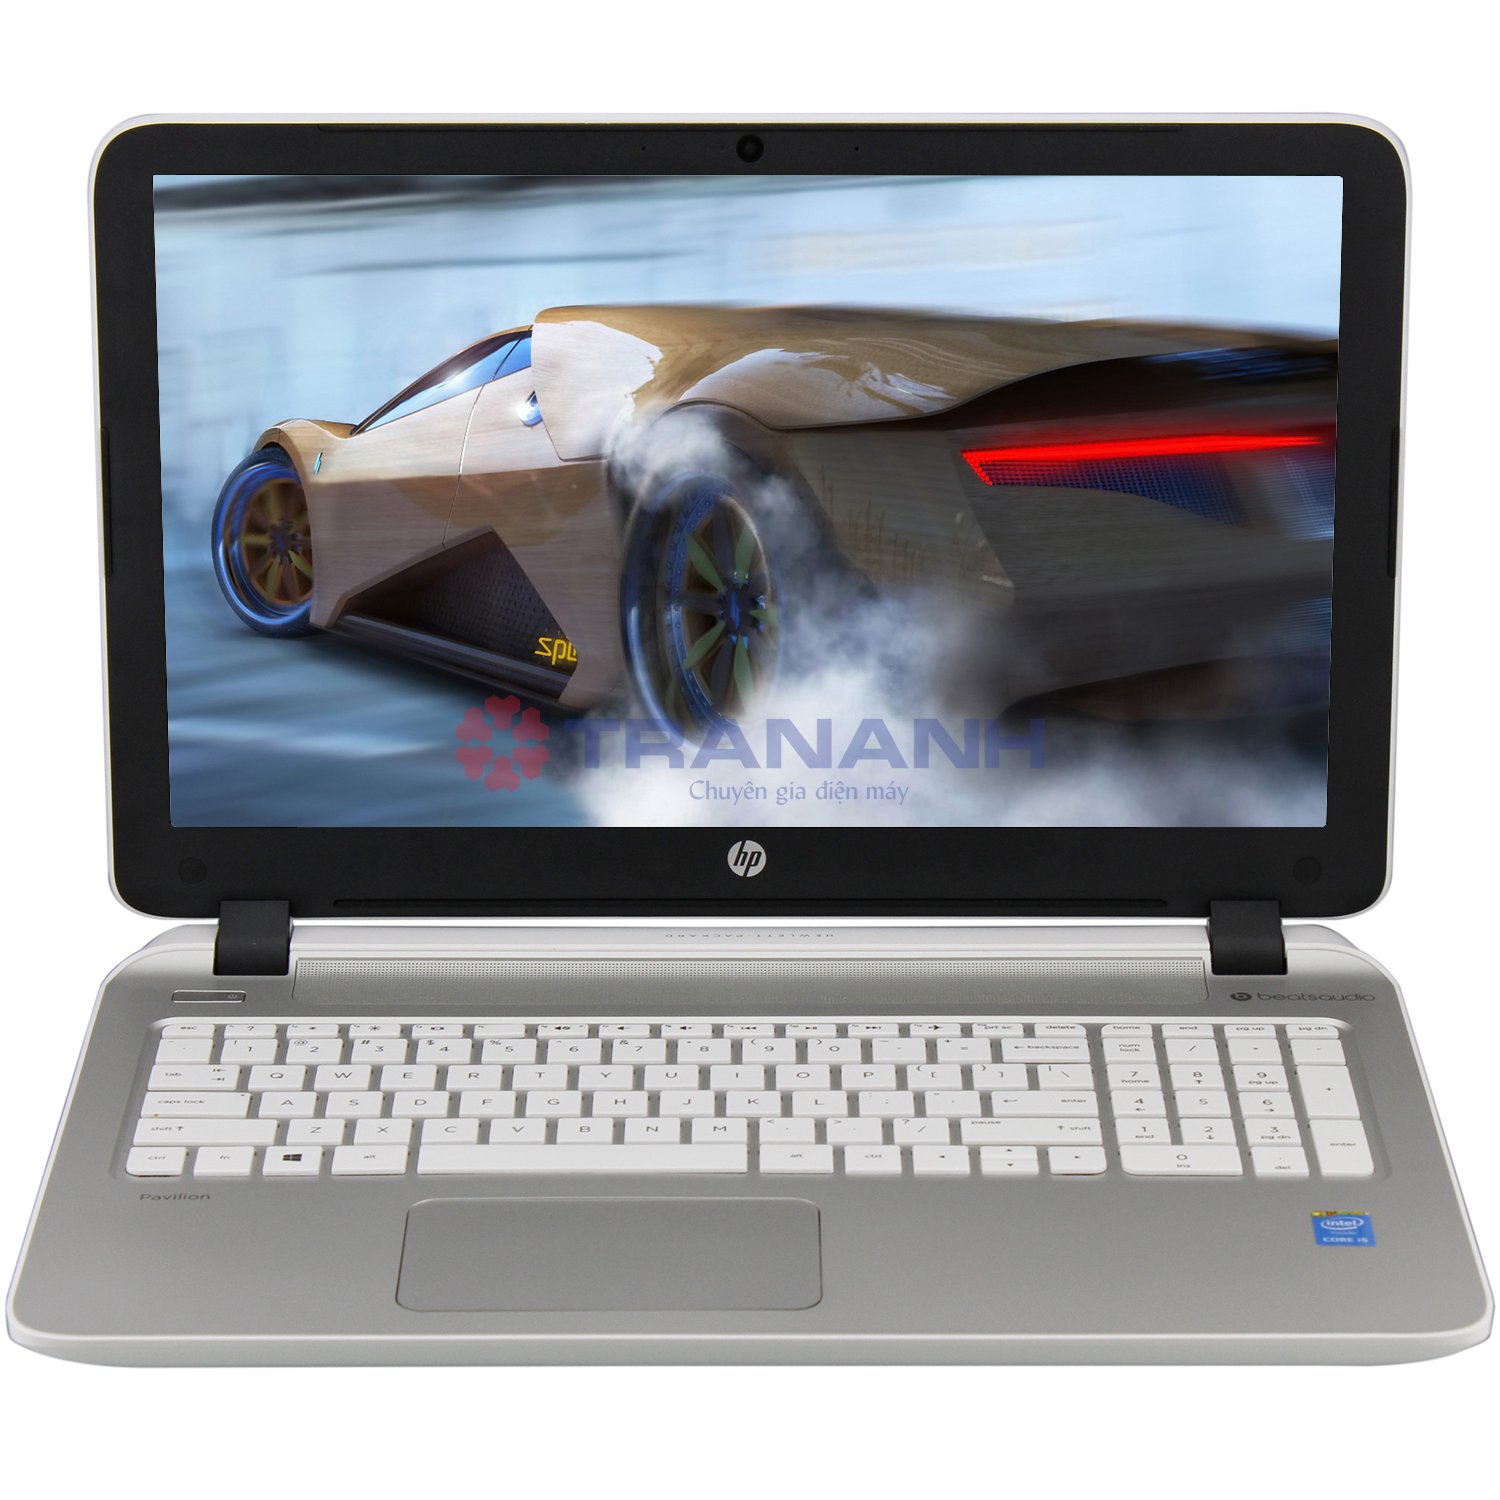 Laptop HP Pavilion 2015-ab070TX M4Y34PA -  Intel Core i5-5200U 2 x 2.20GHz, 4GB RAM, 500GB HDD, NVIDIA GeForce GT 940M 2GB, 15.6 inch